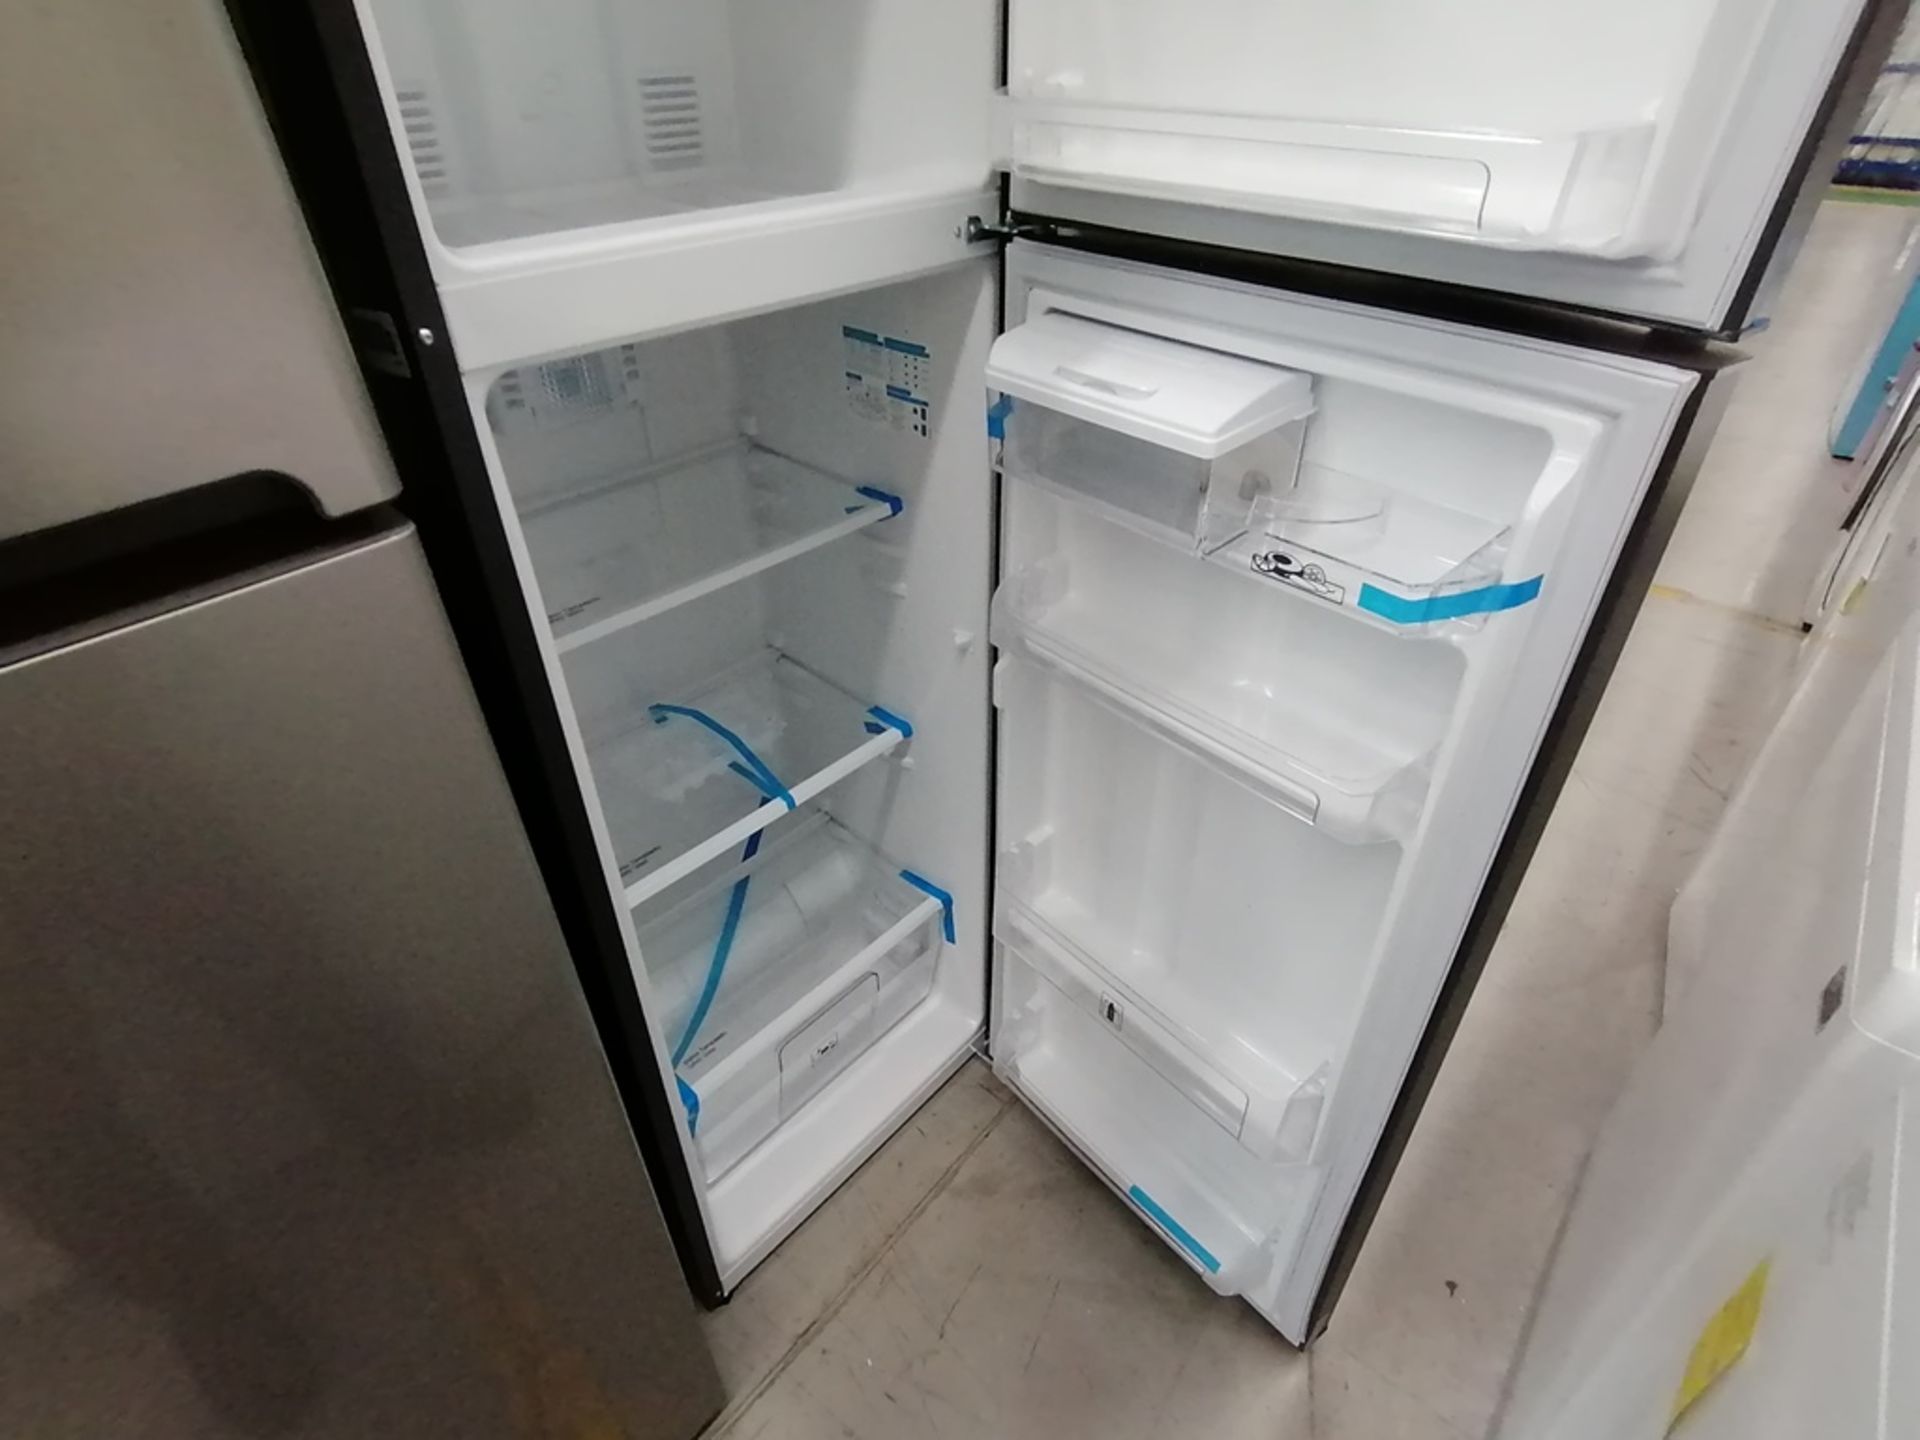 Lote de 2 refrigeradores incluye: 1 Refrigerador, Marca Winia, Modelo DFR32210GNV, Serie MR219N1206 - Image 14 of 15